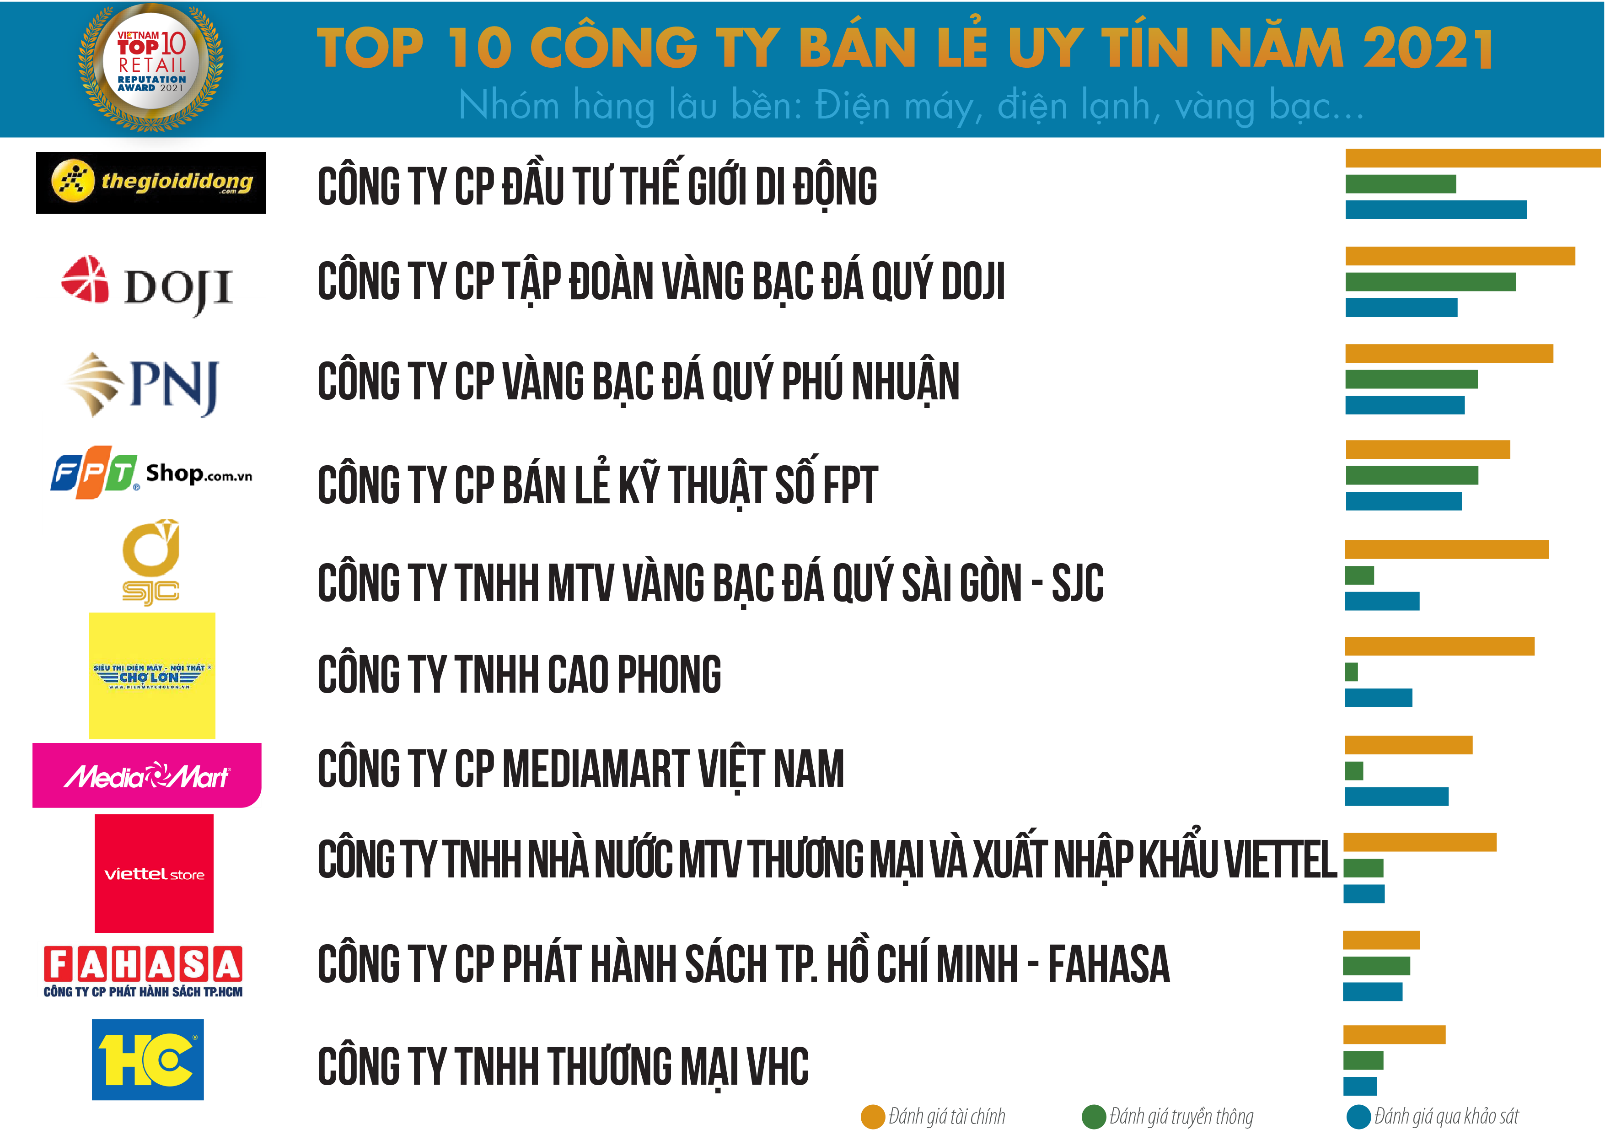 MediaMart vinh dự 04 năm liền giữ vững vị thế trong Top 10 Công ty Bán lẻ uy tín tại Việt Nam